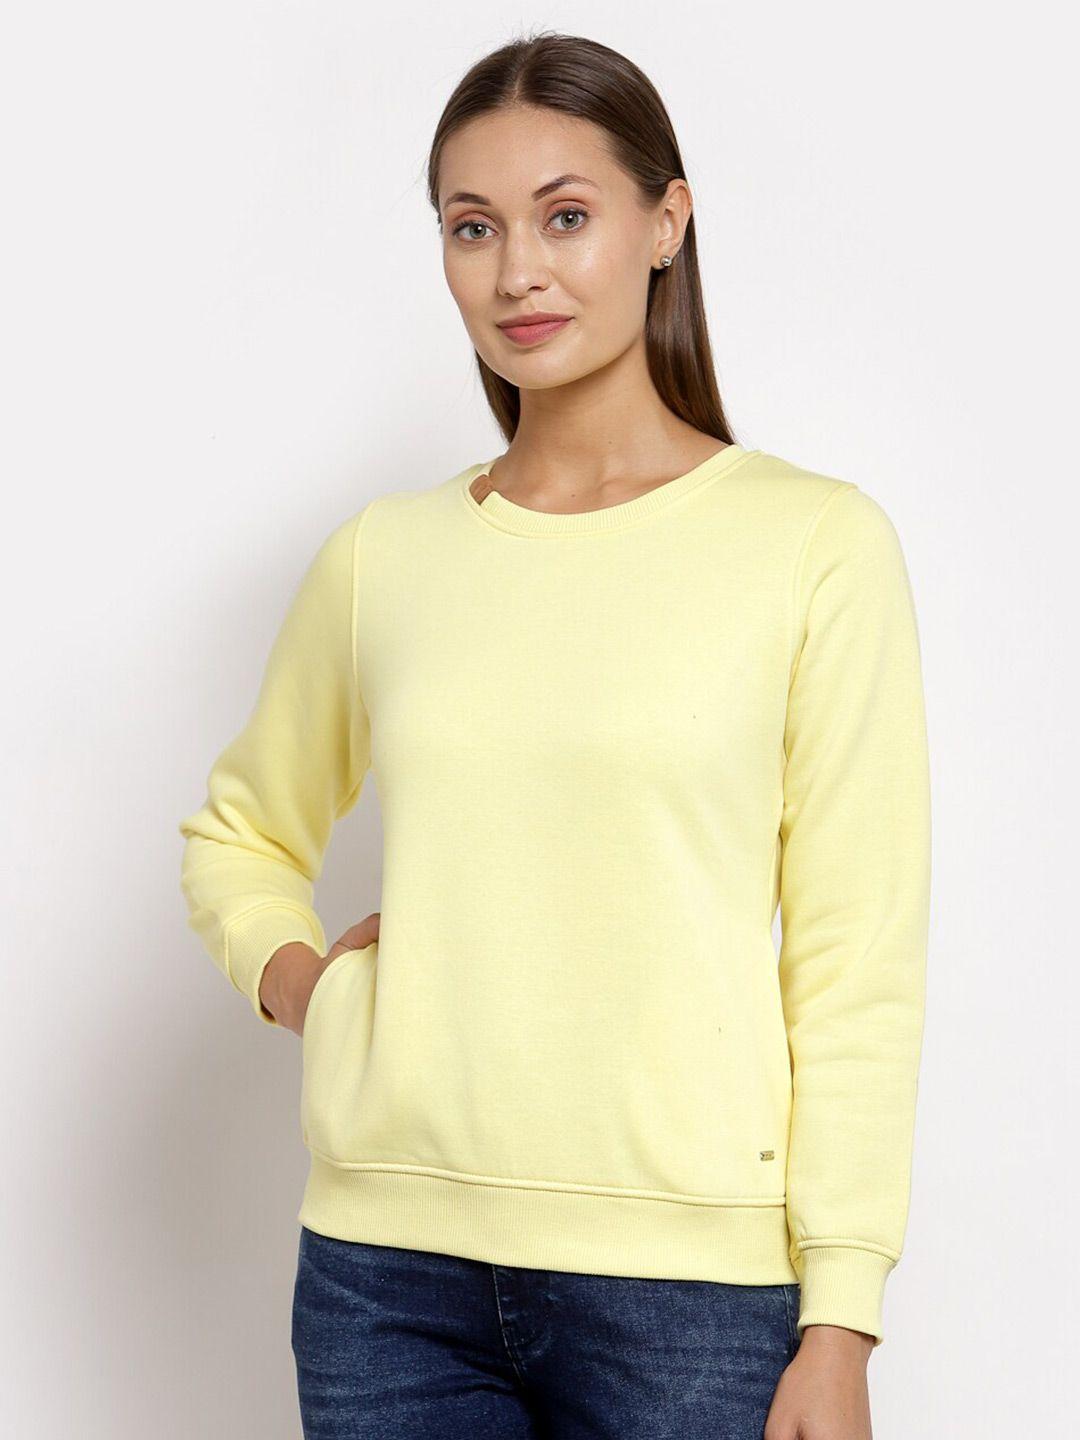 juelle-women-fleece-sweatshirt